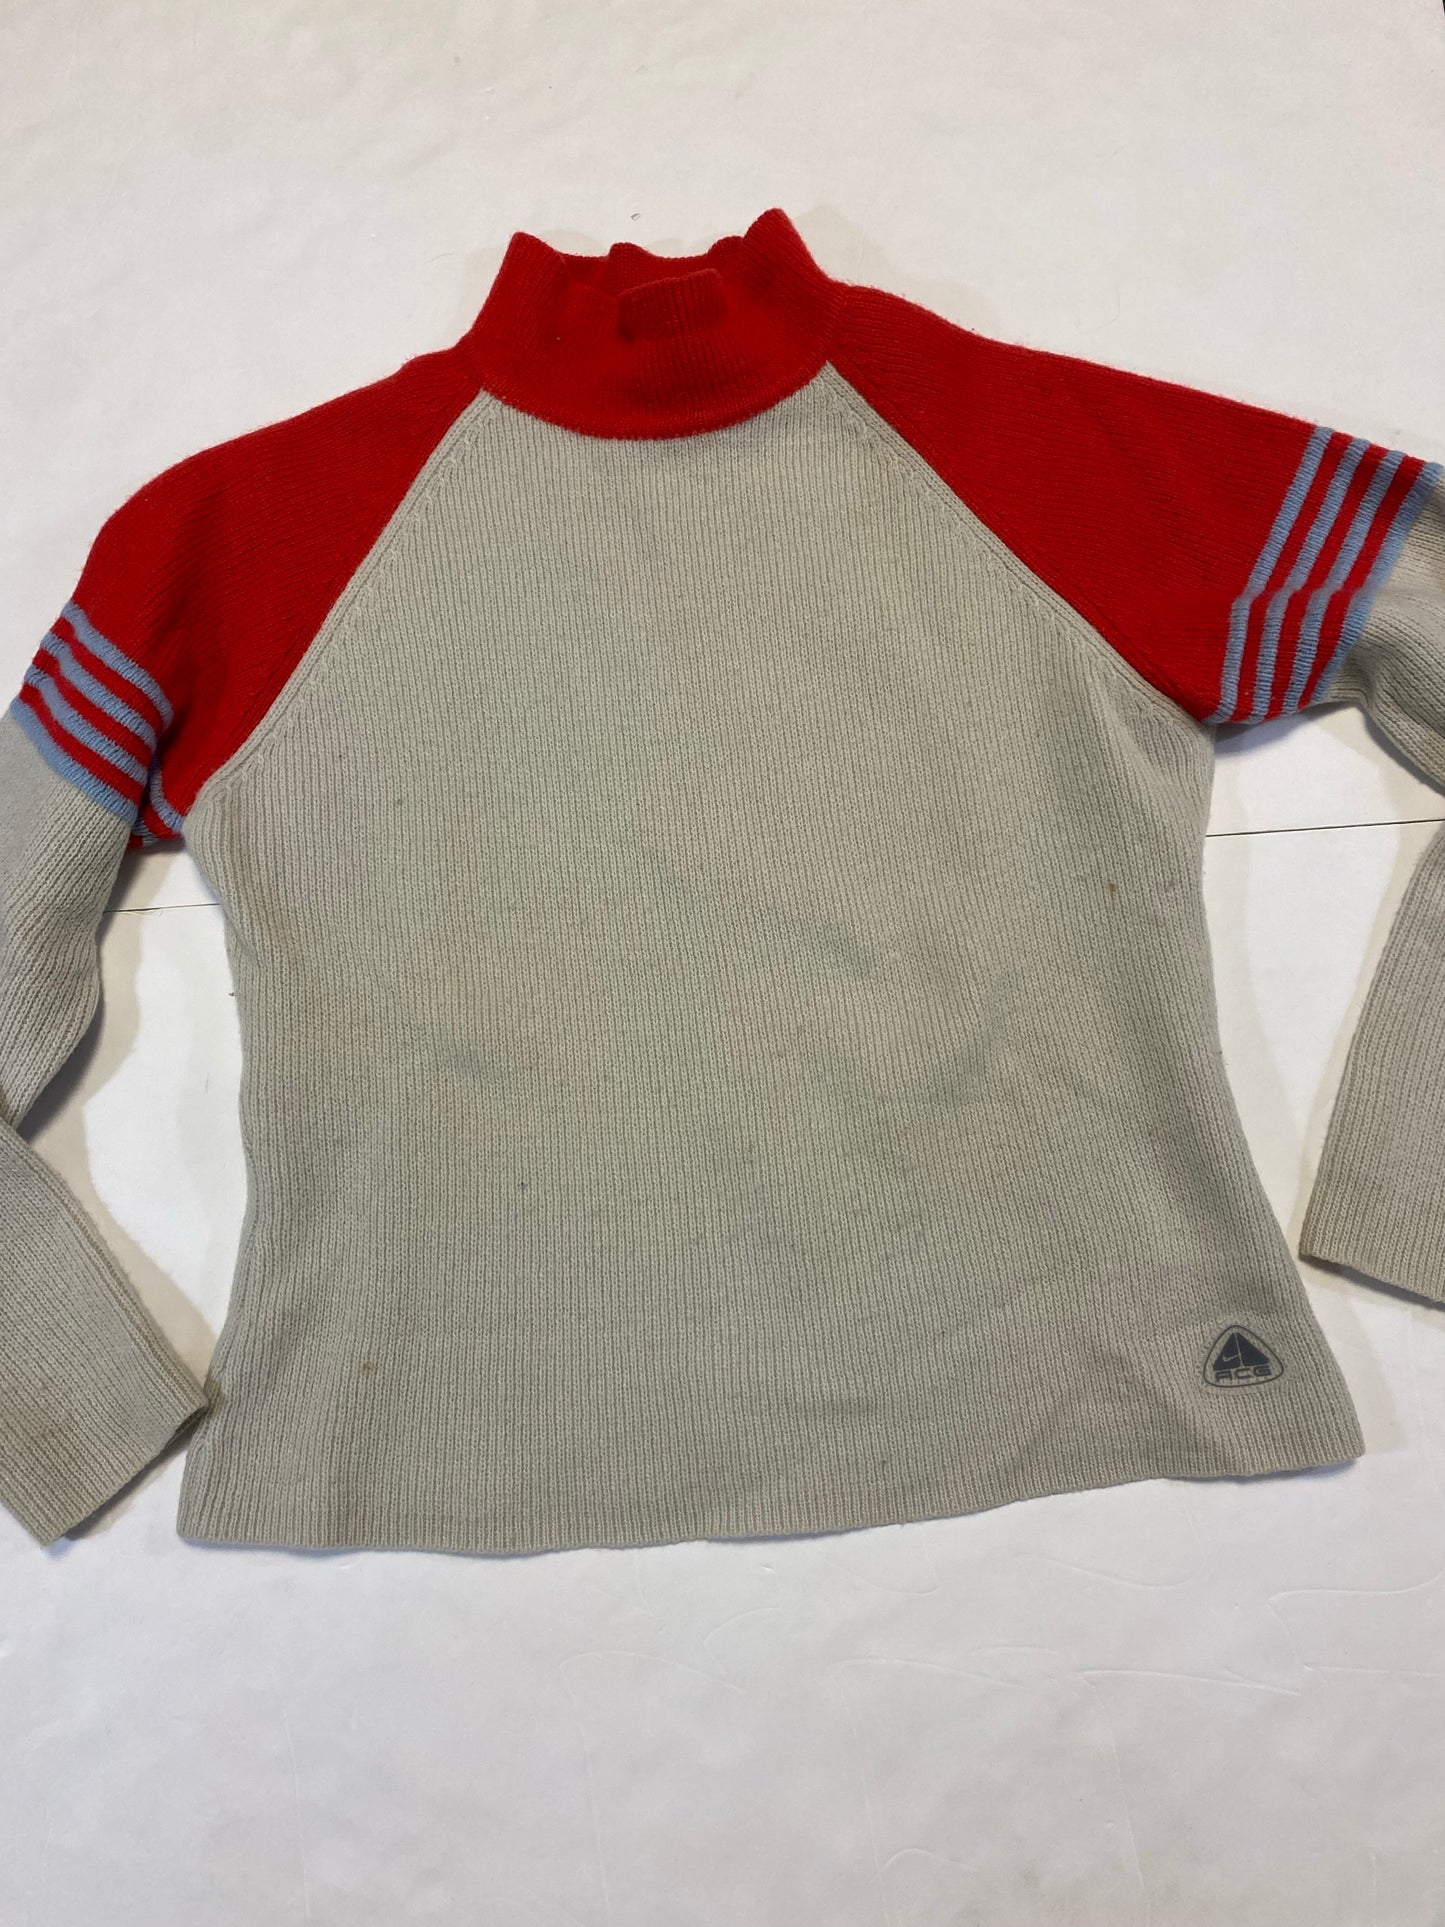 Vintage Women’s Nike ACG Knit Sweater